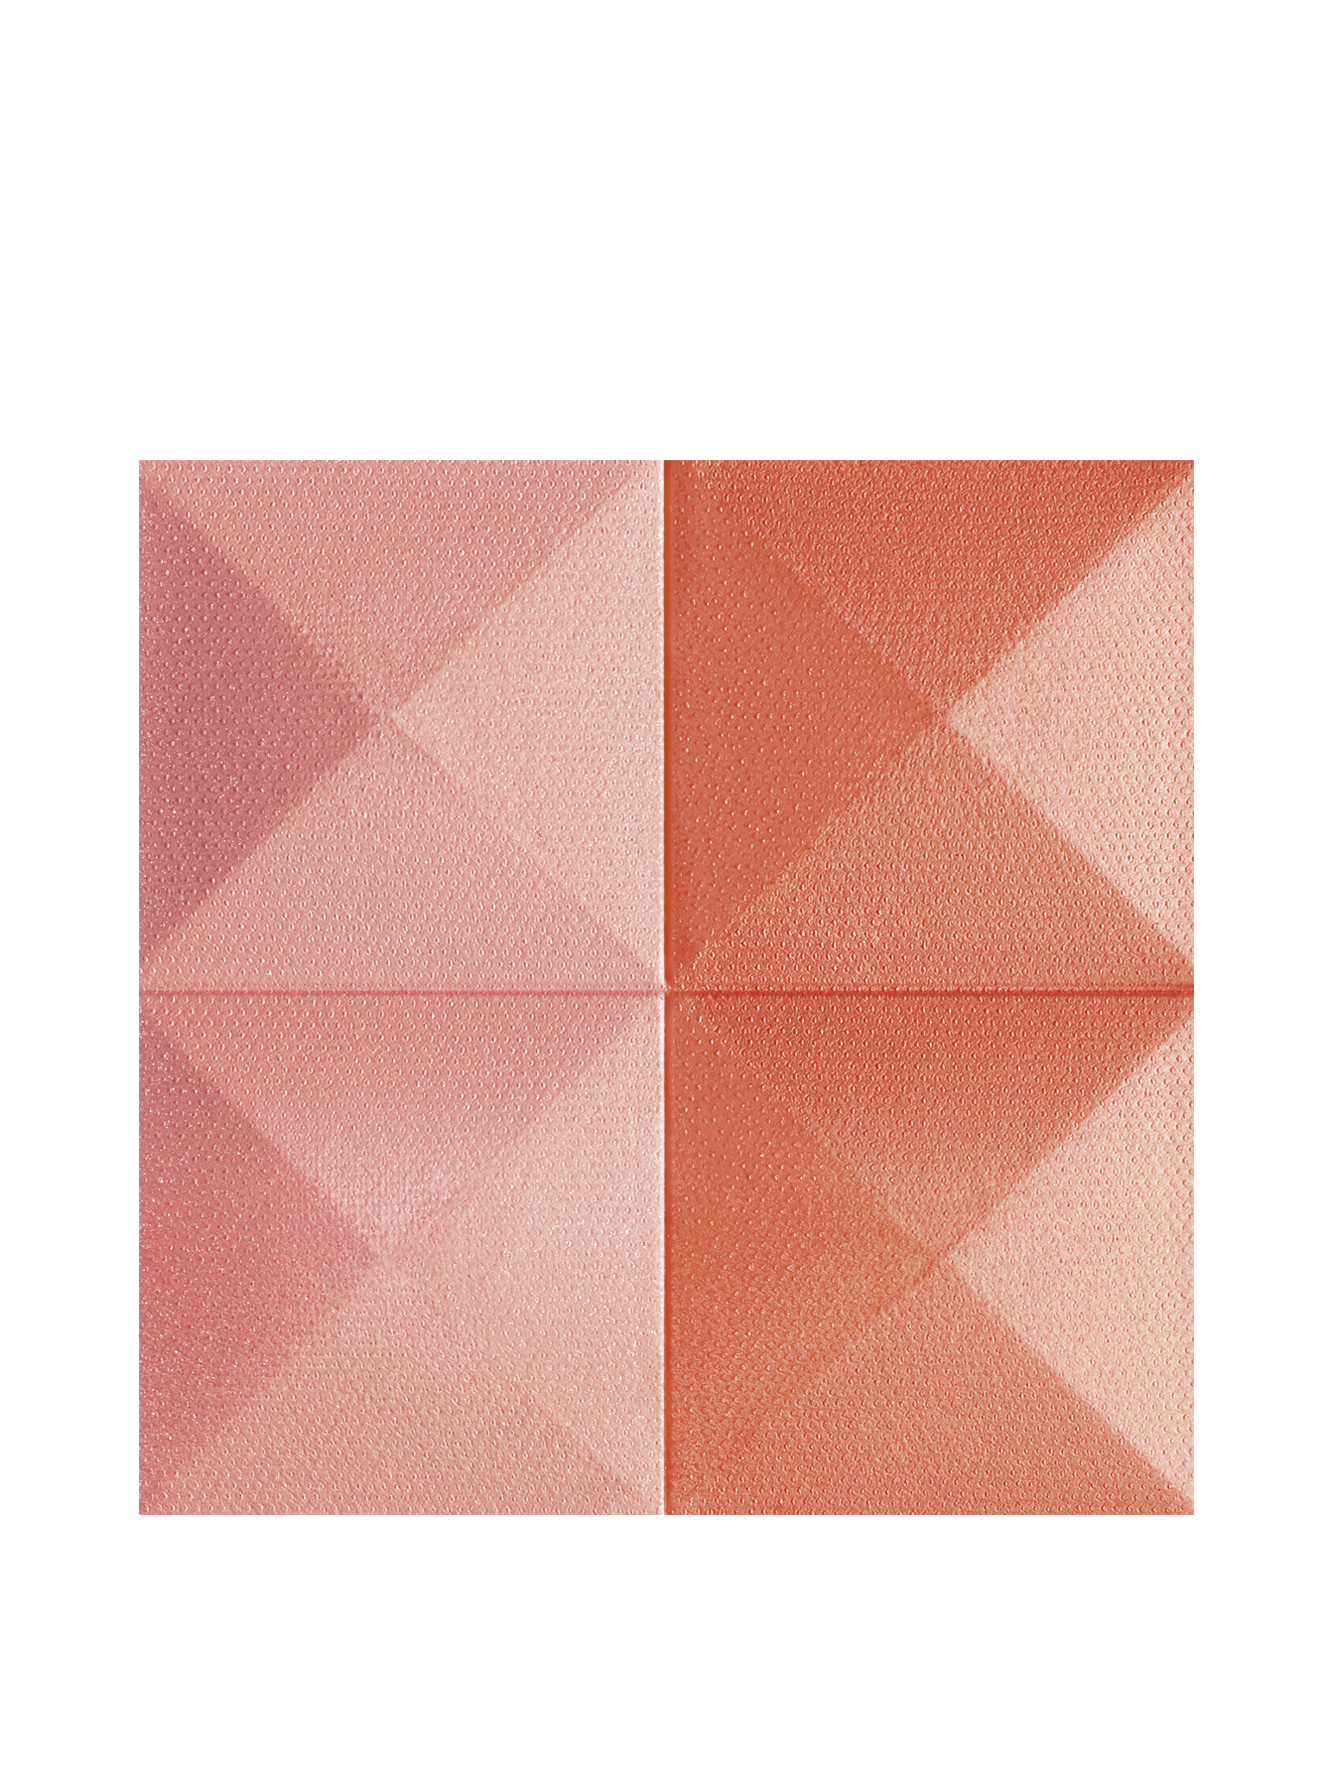 Компактные двухцветные румяна для лица PRISME BLUSH, 03 пикантность, 7 гр - Обтравка1